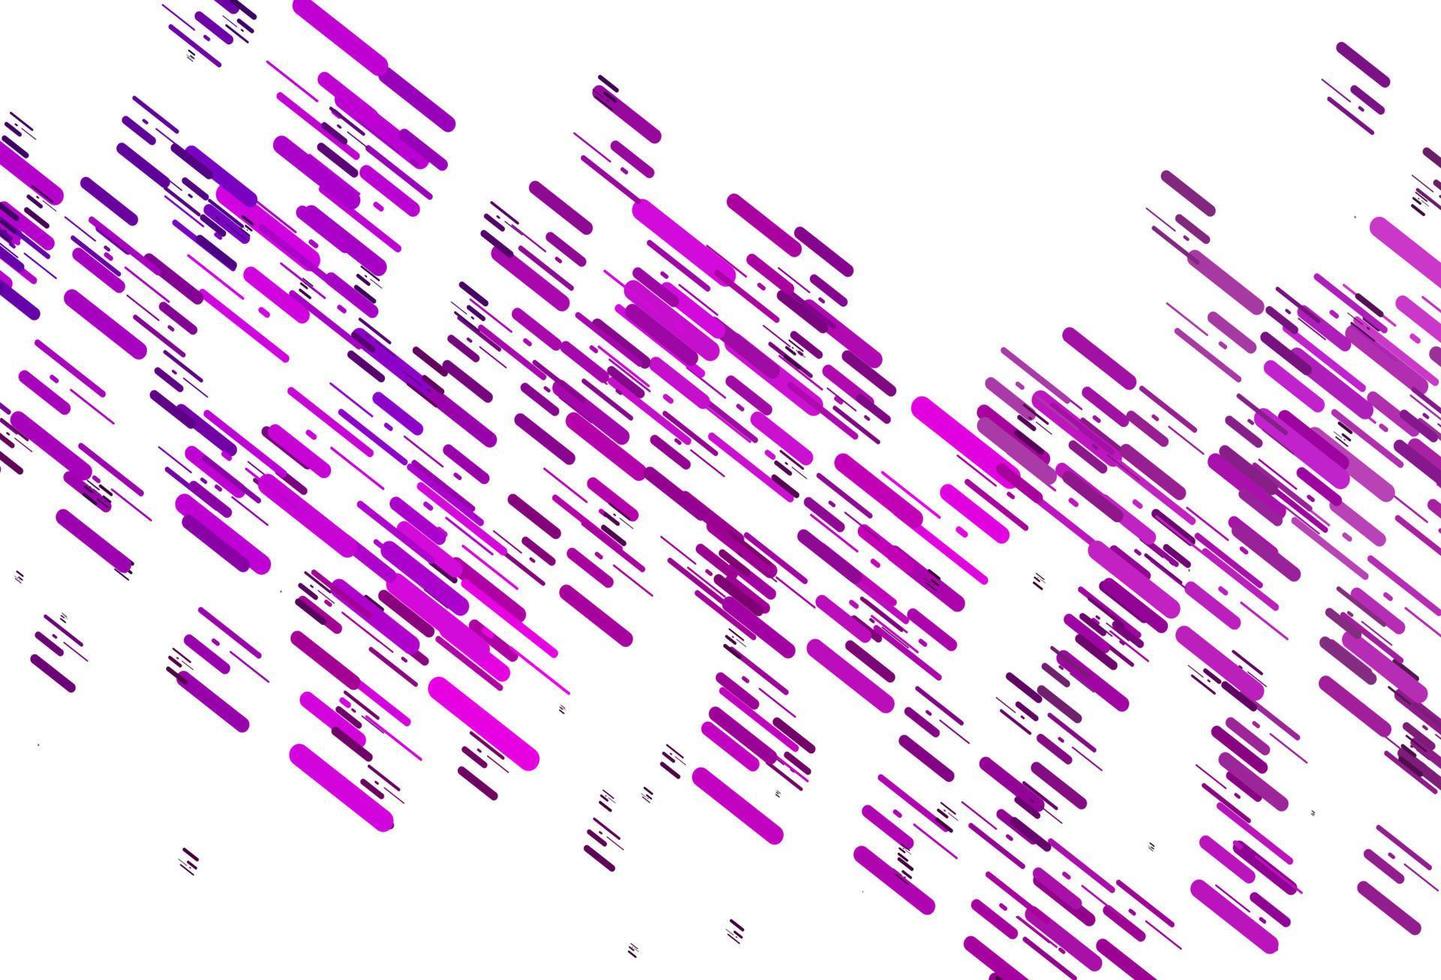 sfondo vettoriale viola chiaro con linee rette.